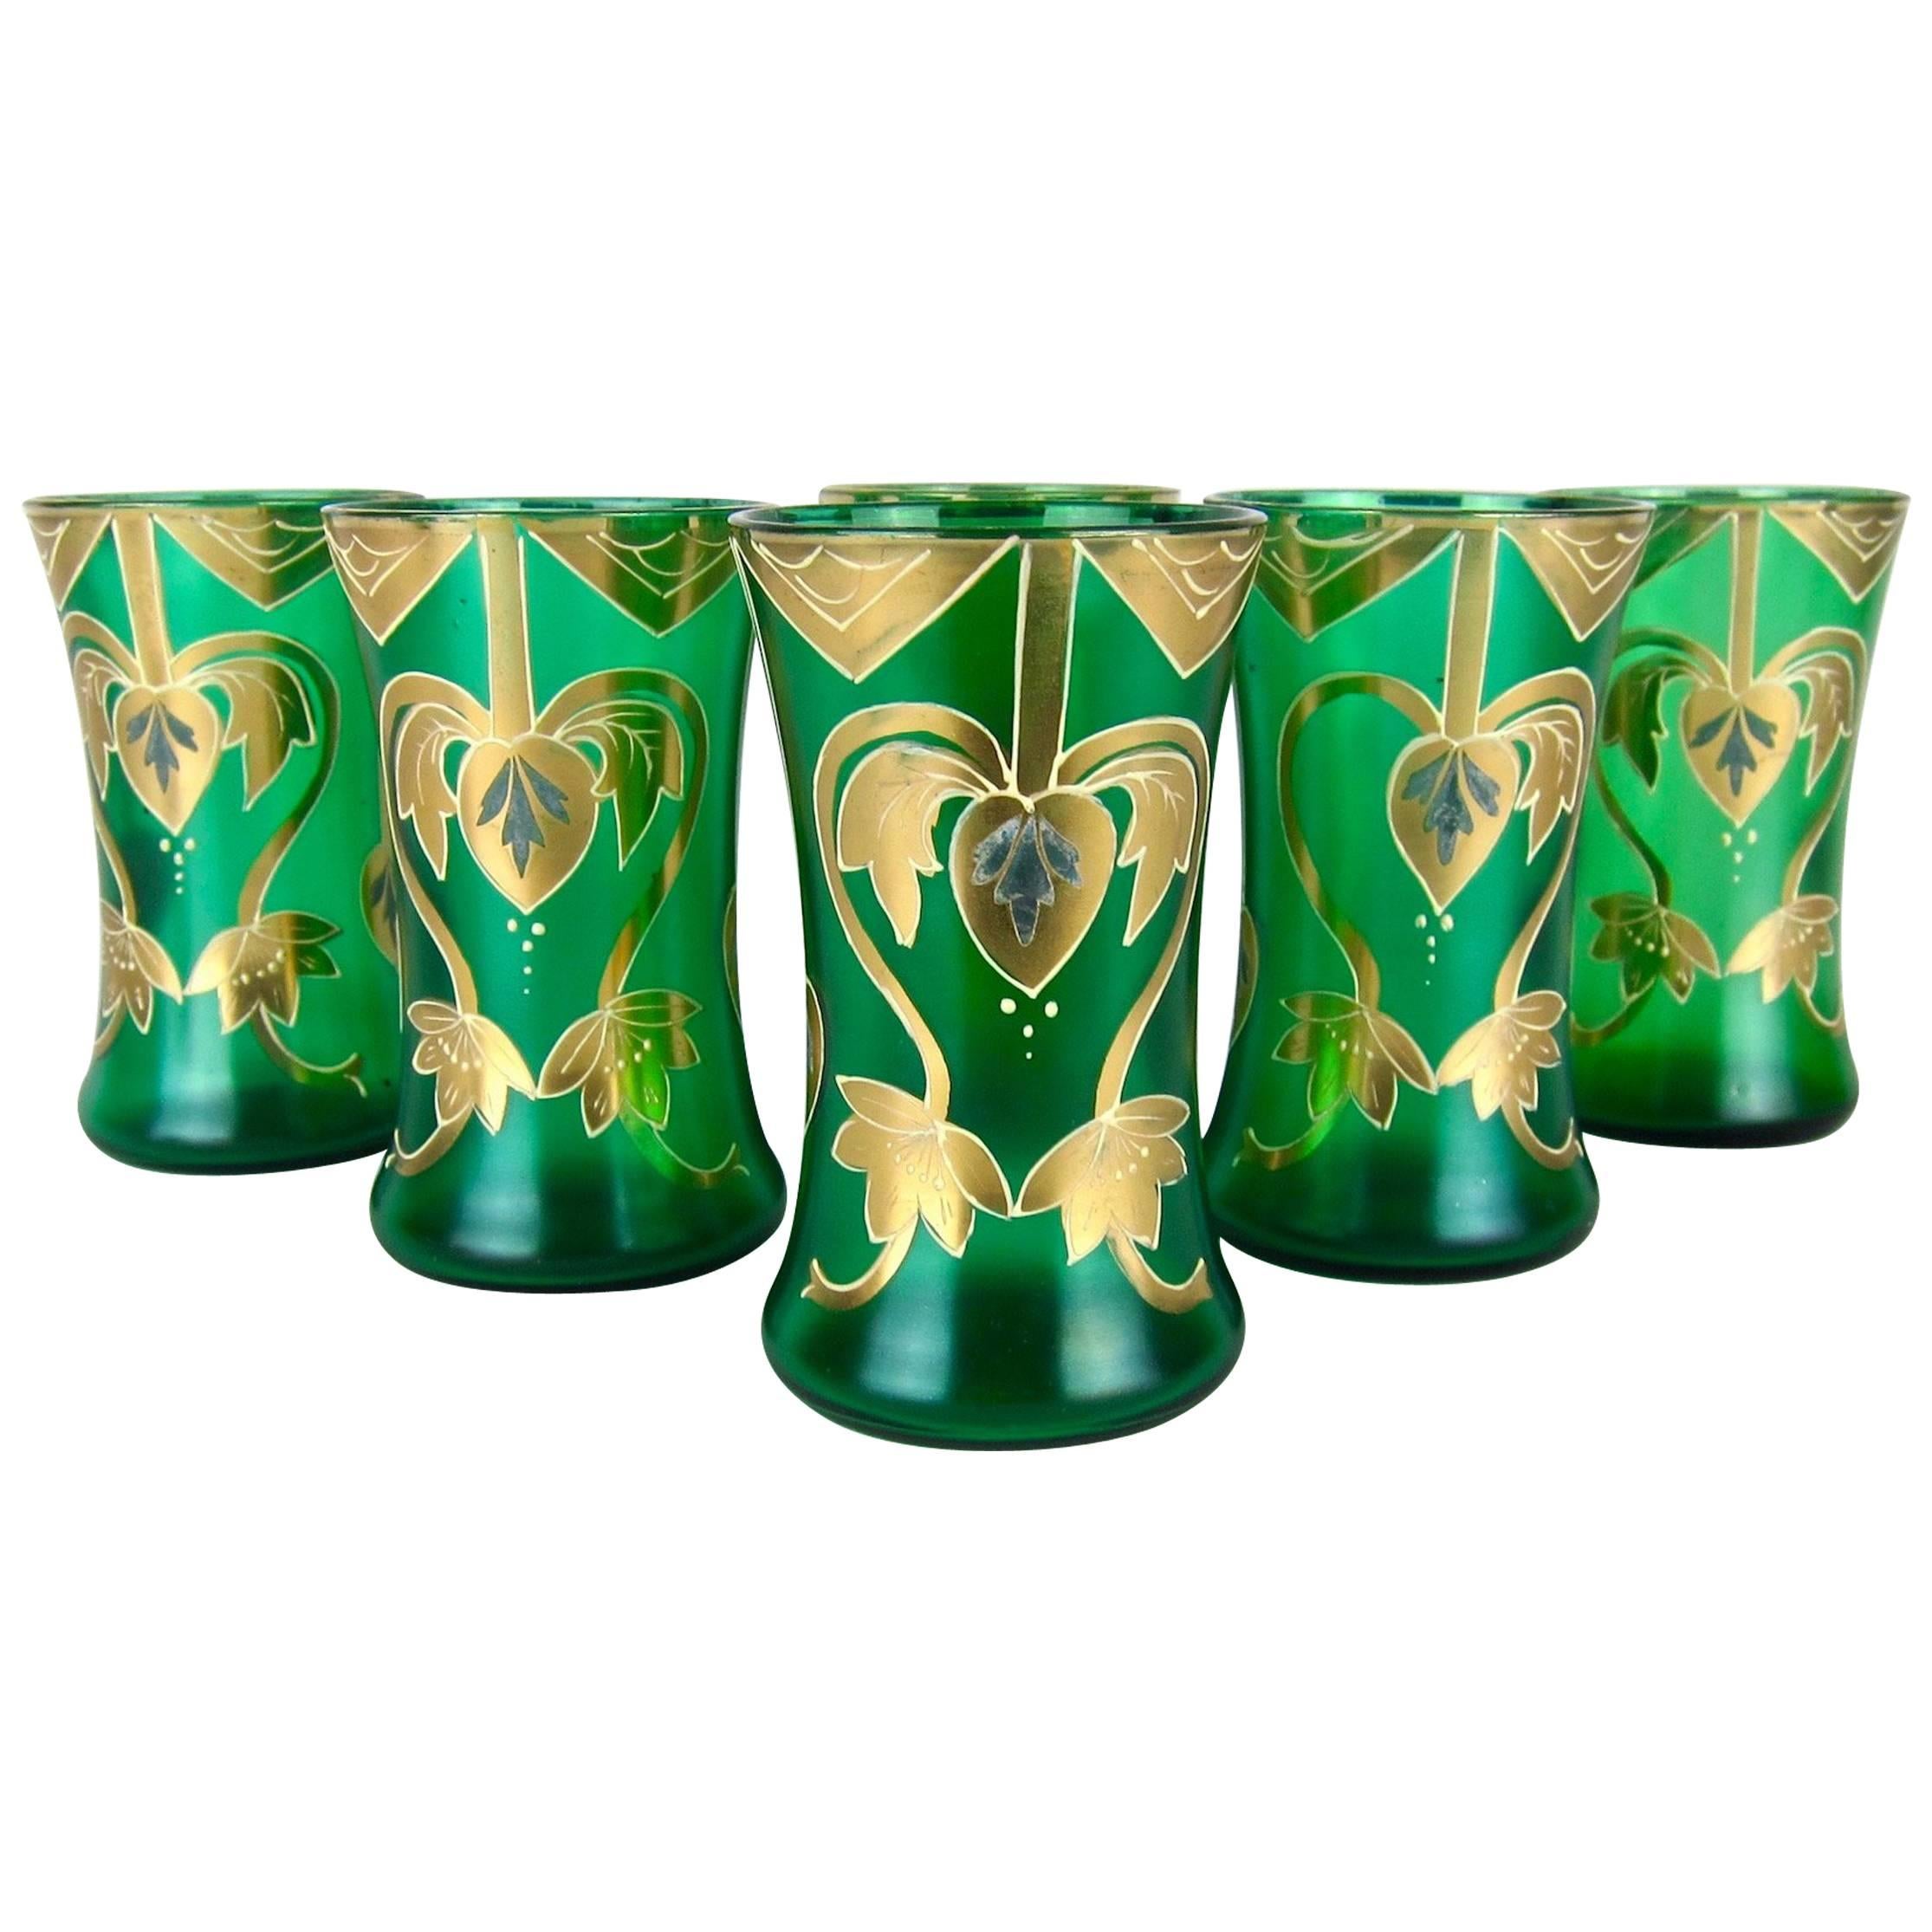 Antique Green Drinking Glasses with Golden Art Nouveau Enamel Decor